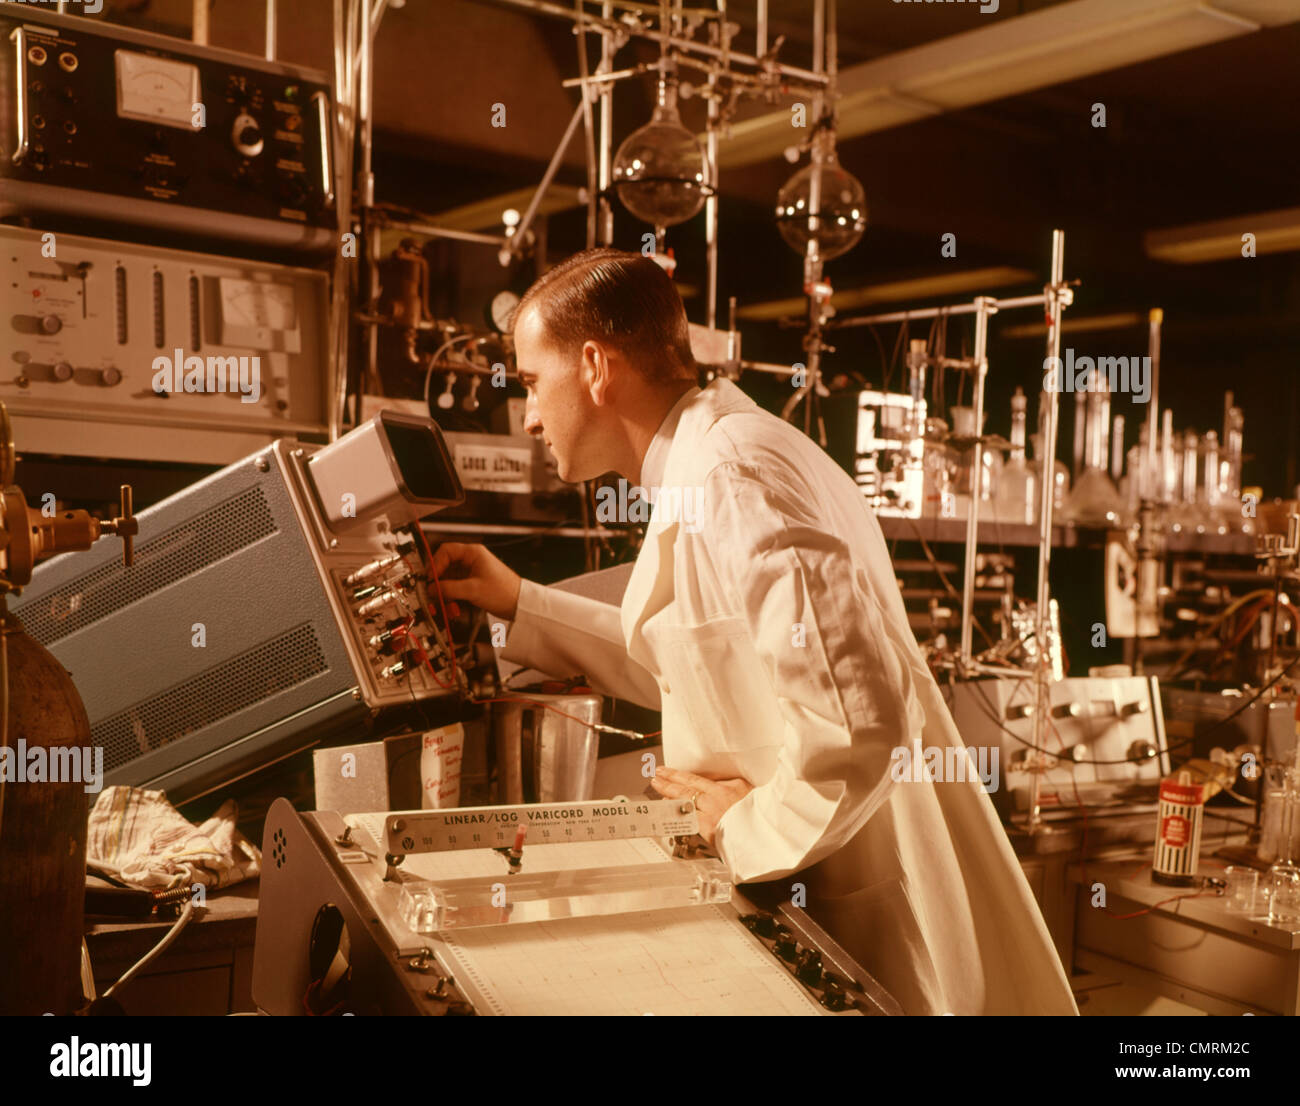 1960 1960S WISSENSCHAFTLER LABORANTIN IN BILDSCHIRM OSZILLOSKOP WISSENSCHAFT TECHNOLOGIE WISSENSCHAFTLER LABS RETRO Stockfoto